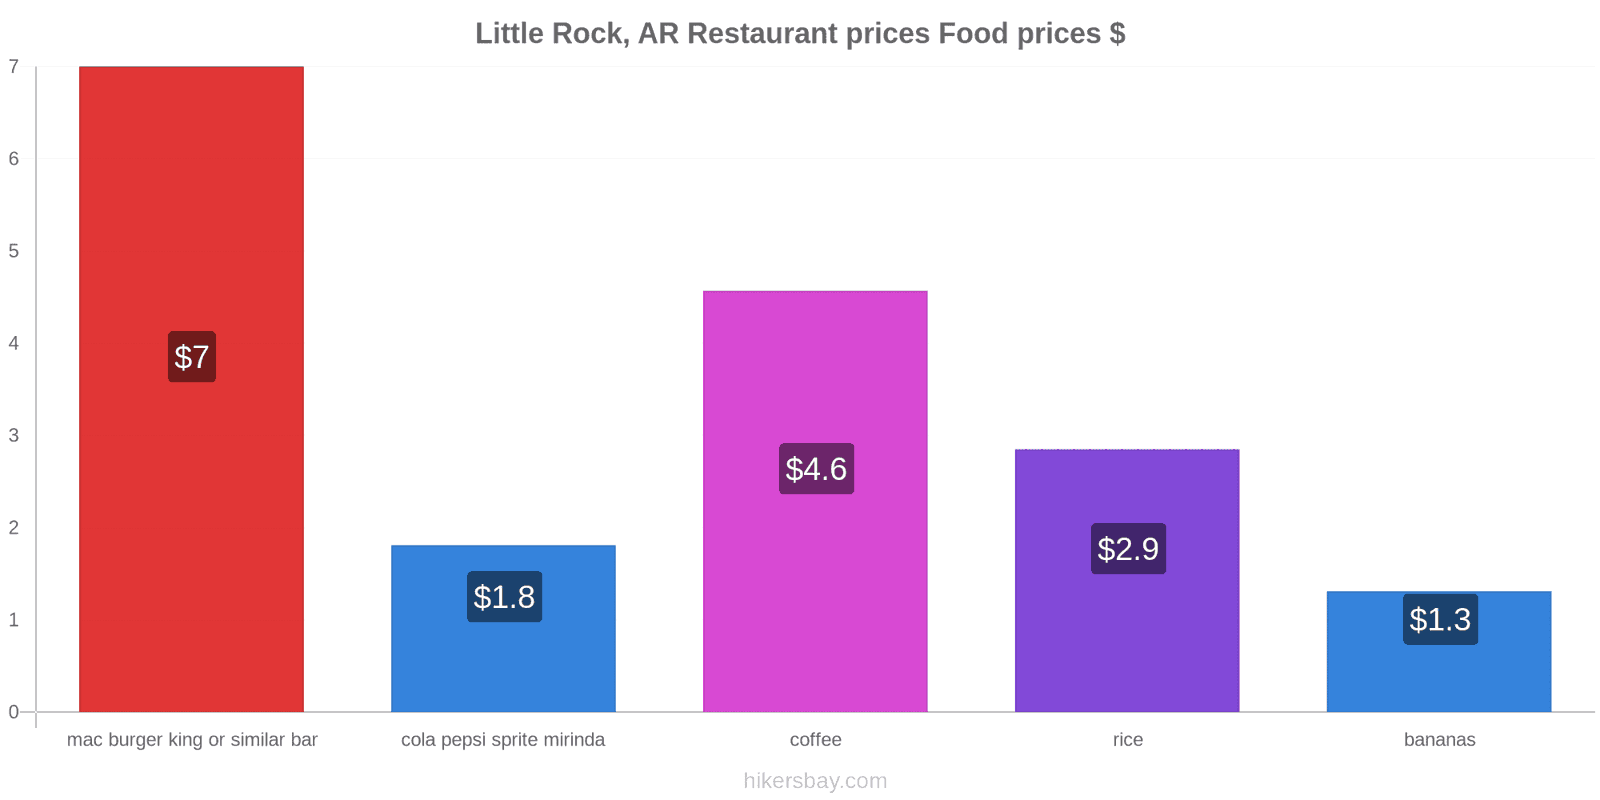 Little Rock, AR price changes hikersbay.com